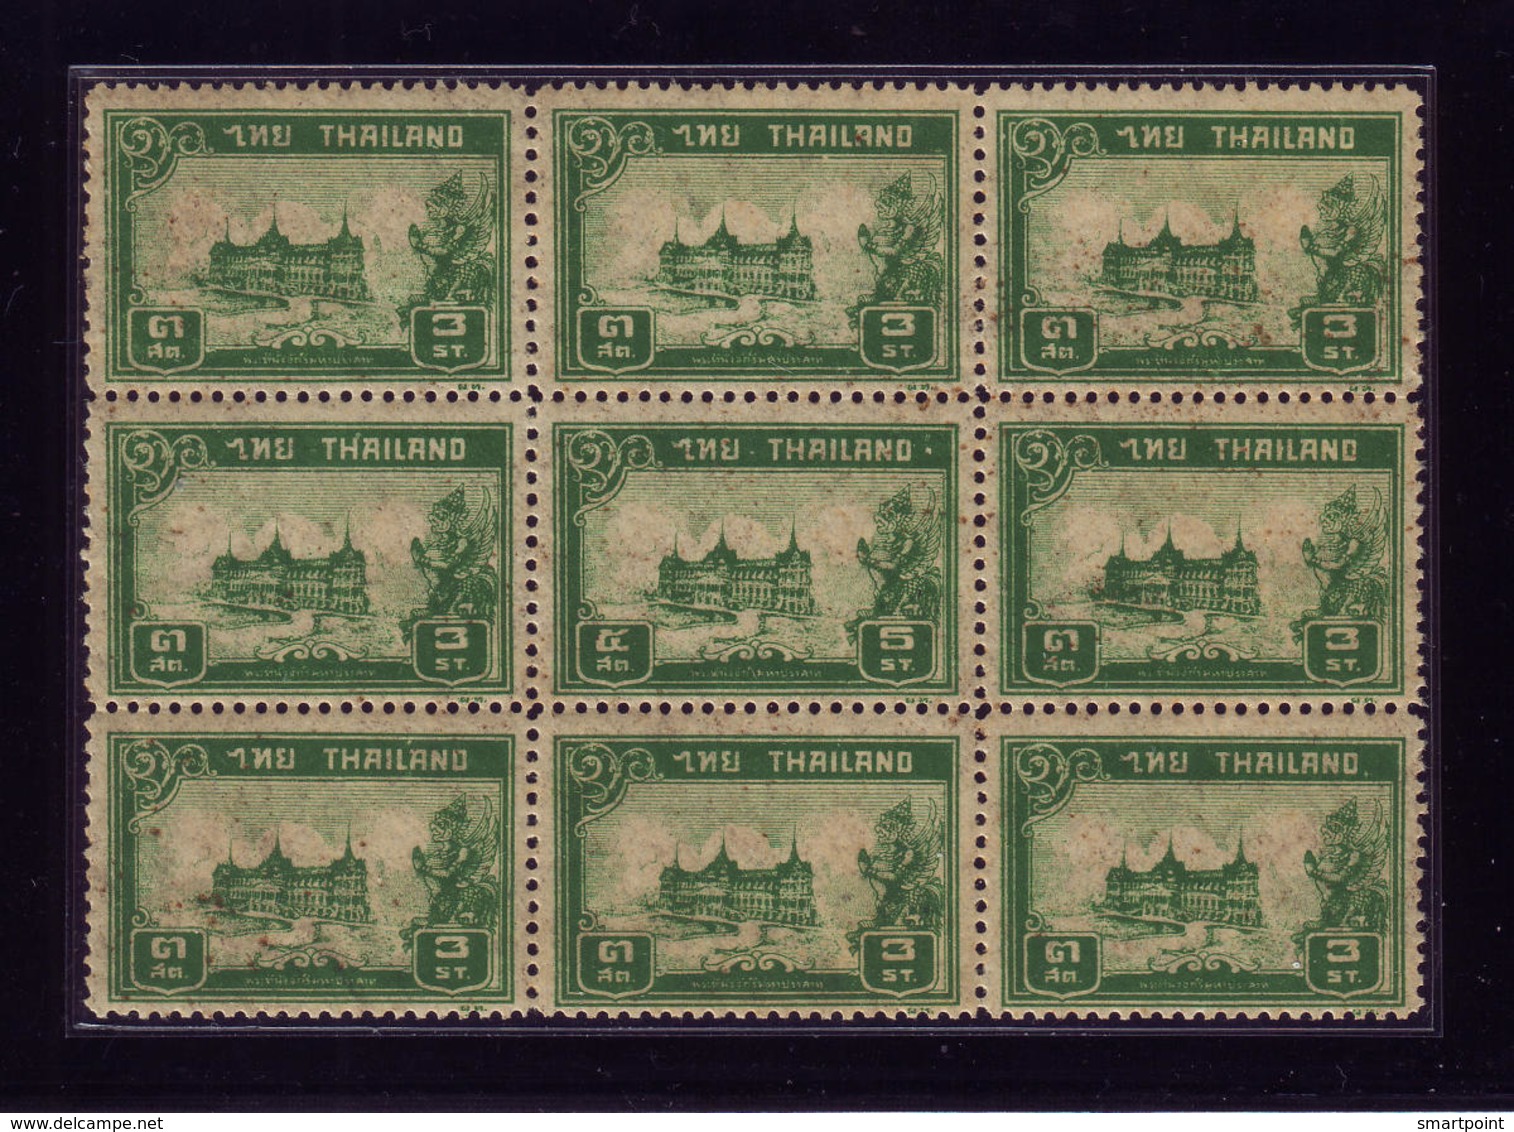 Thailand Stamp 1940 Chakri Palace B9 5 Satang In 3 Satang Green Color Plate ERROR! - Thailand